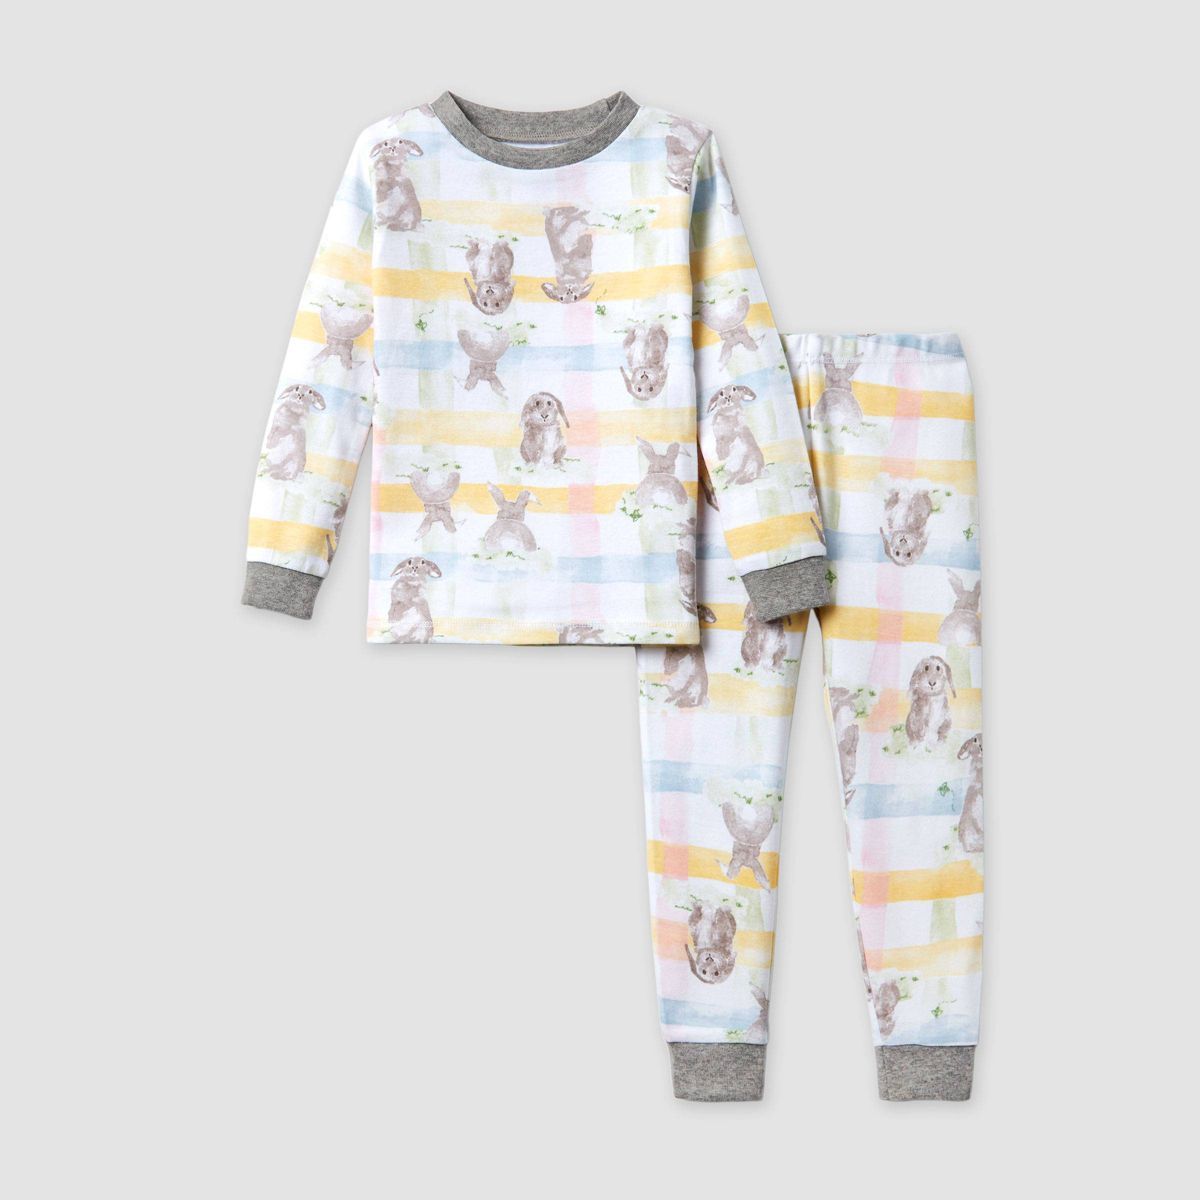 Burt's Bees Baby® Kids' 2pc Easter Organic Cotton Pajama Set - White/Gray | Target